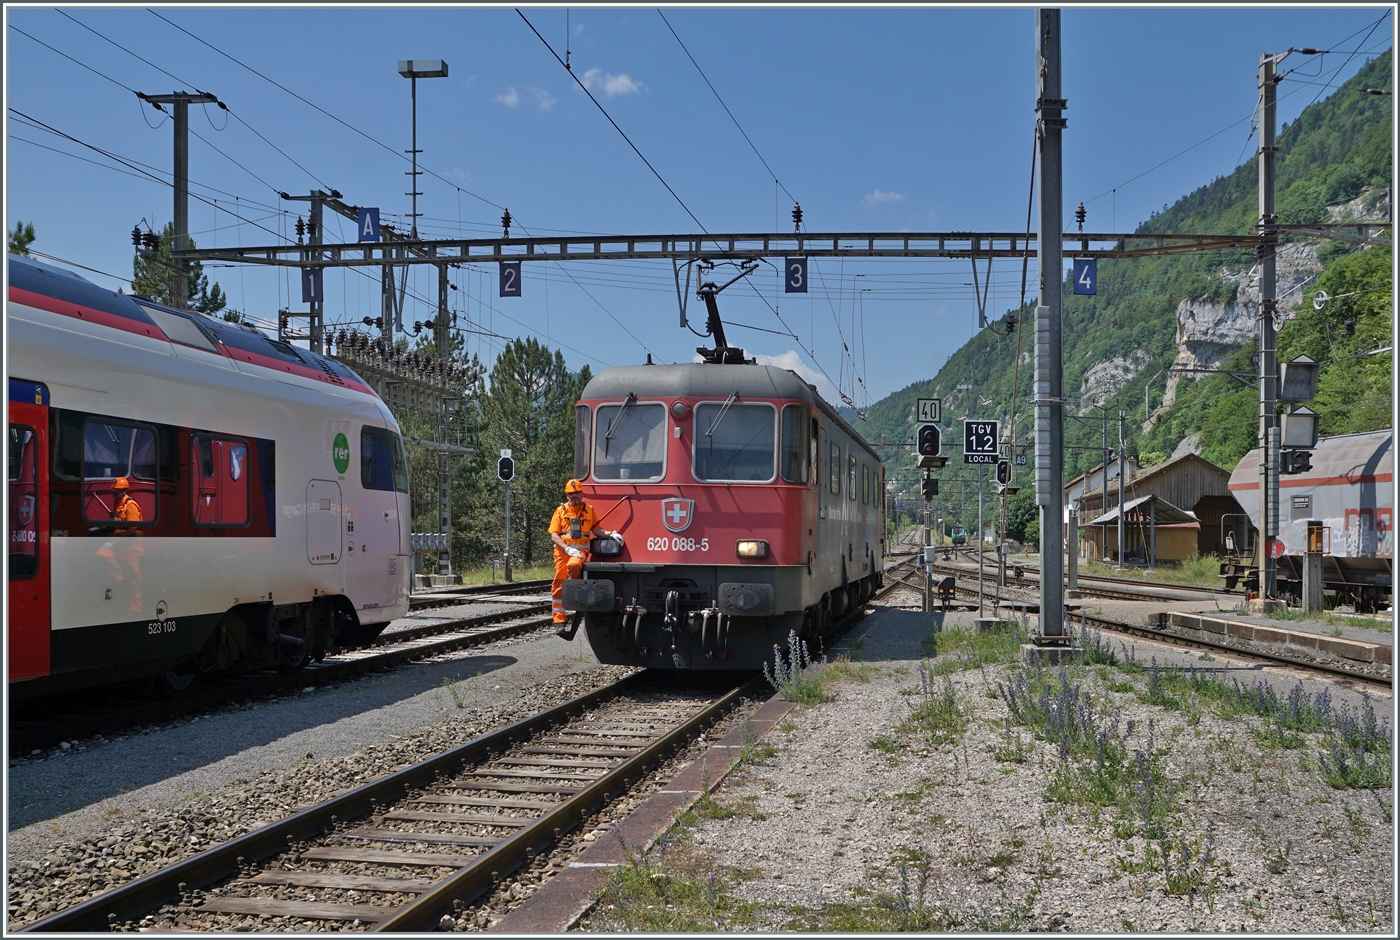 Die SBB Re 6/6 11688 (Re 620 088-5)  Linthal  rangiert im Grenzbahnhof Vallorbe für die Übernahme des Gegenzugs.

16. Juni 2022